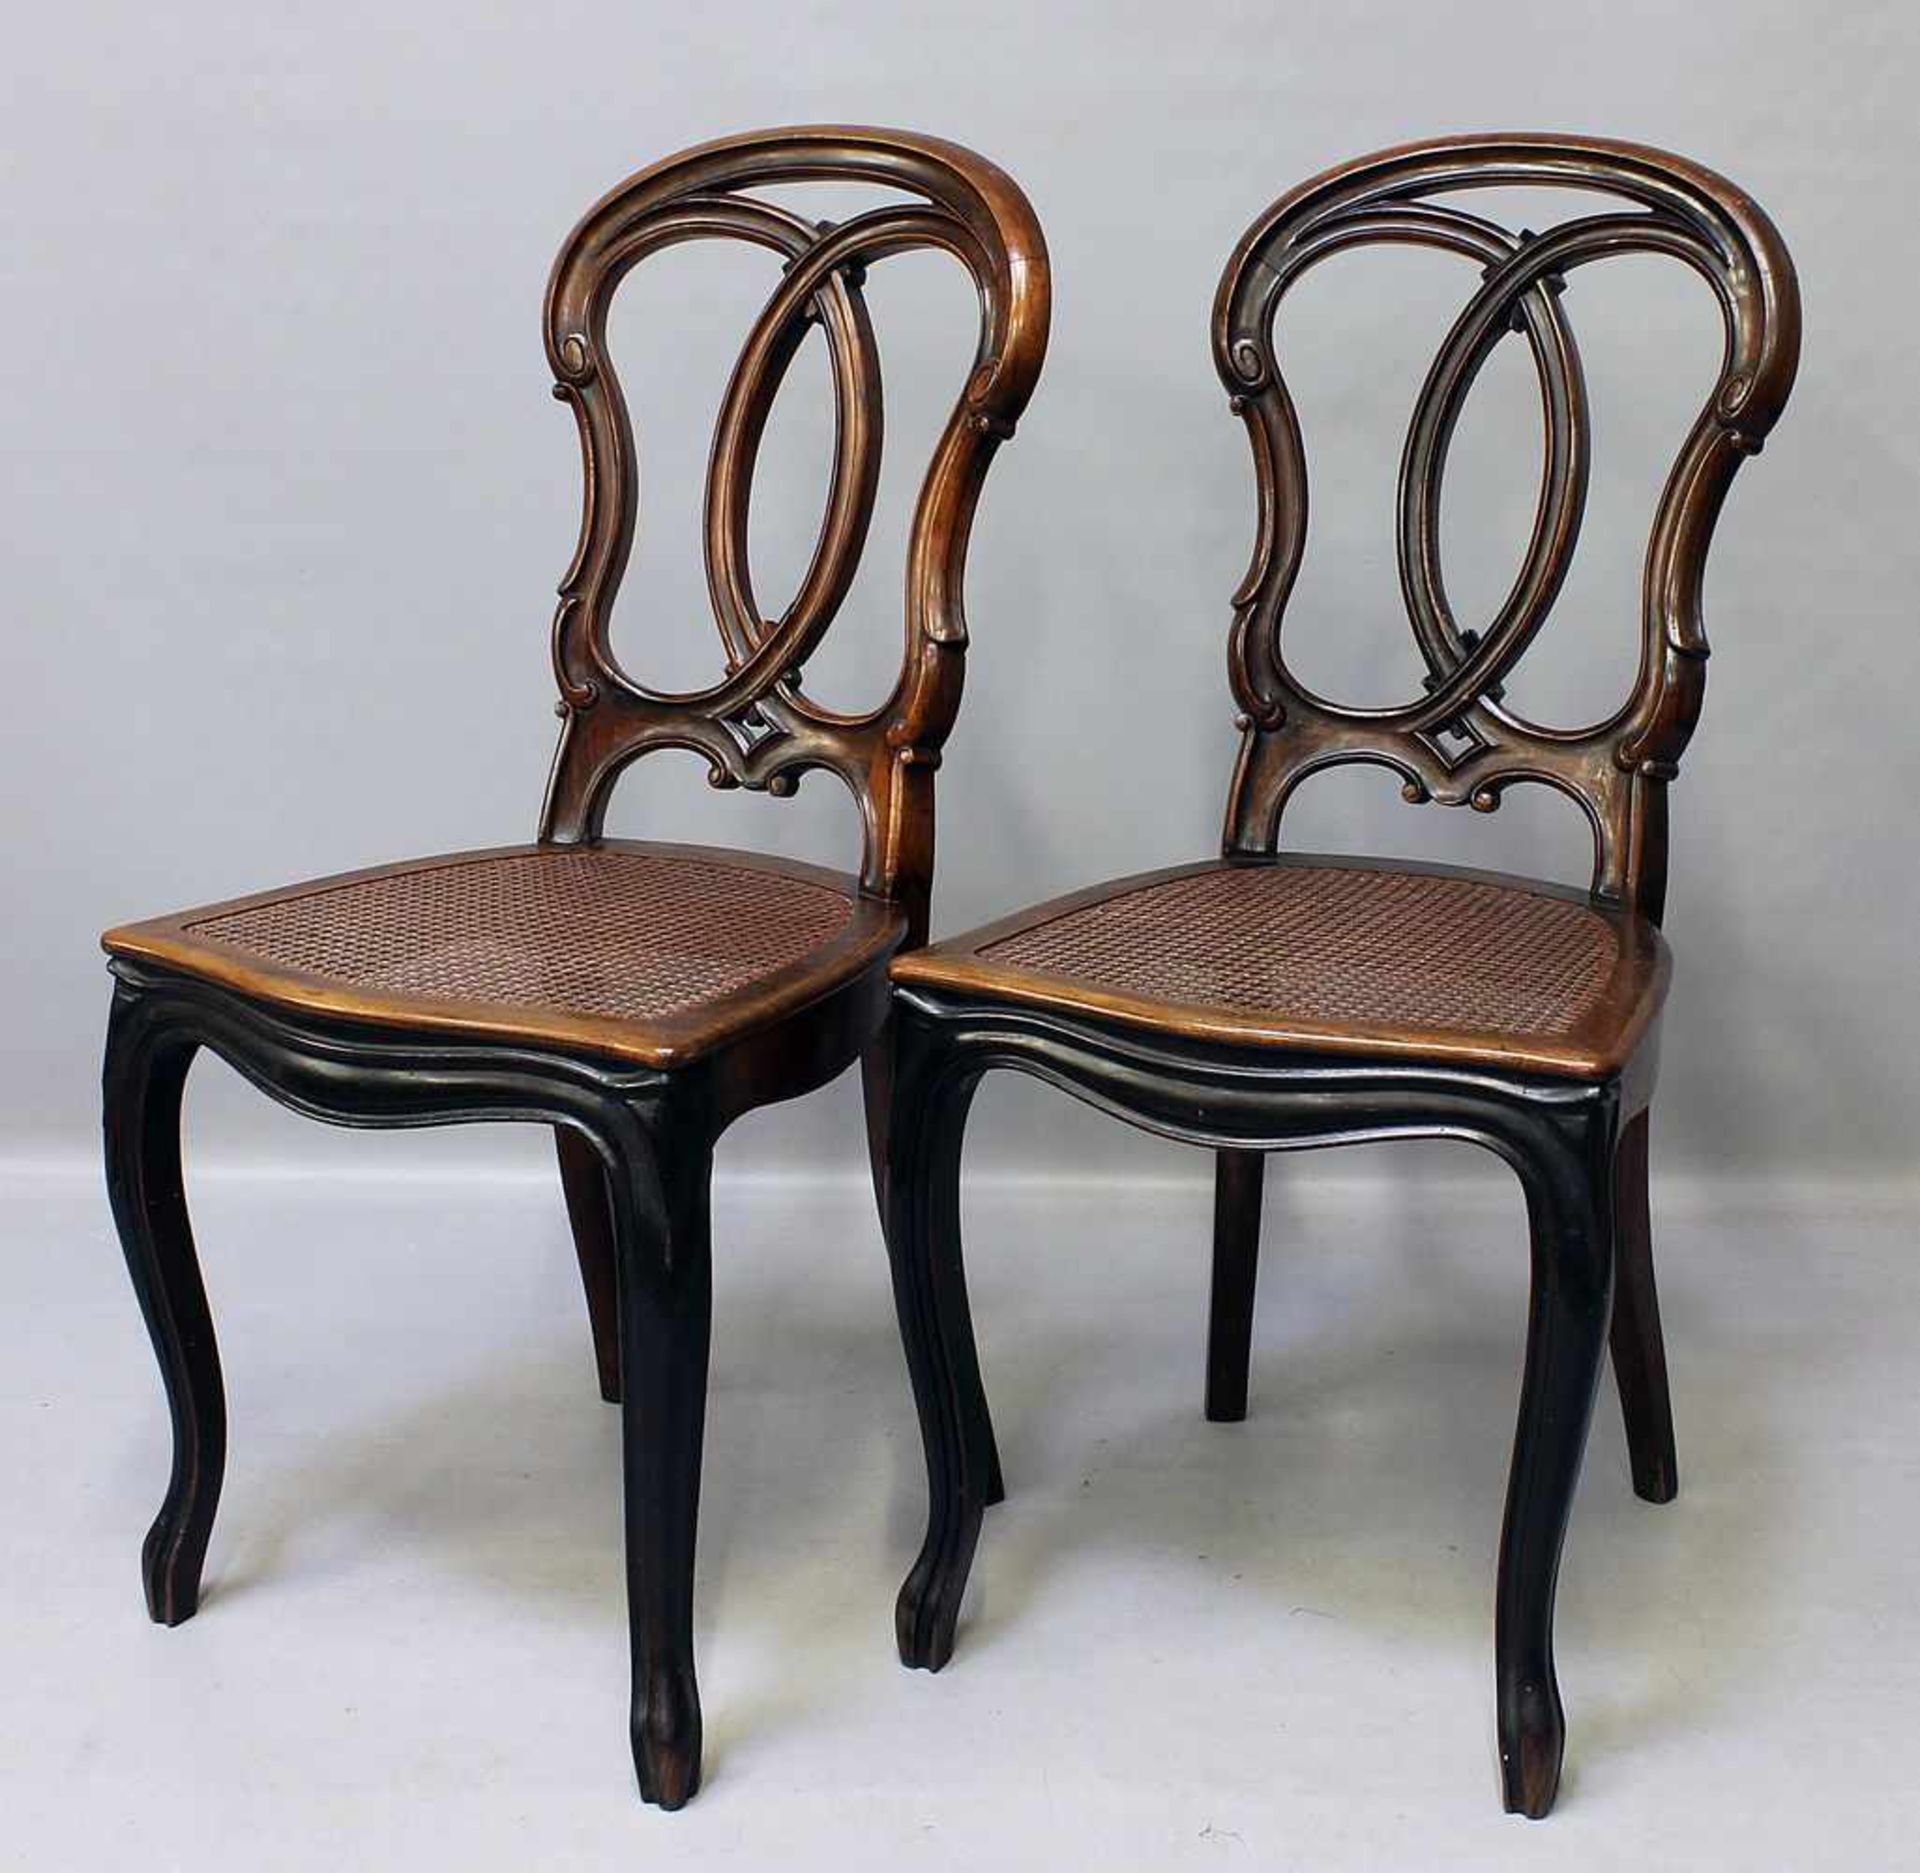 Paar Biedermeier-Stühle.Kanneliierte Nussbaumgestelle. Bretzelförmige Rückenlehen. Sitz mit